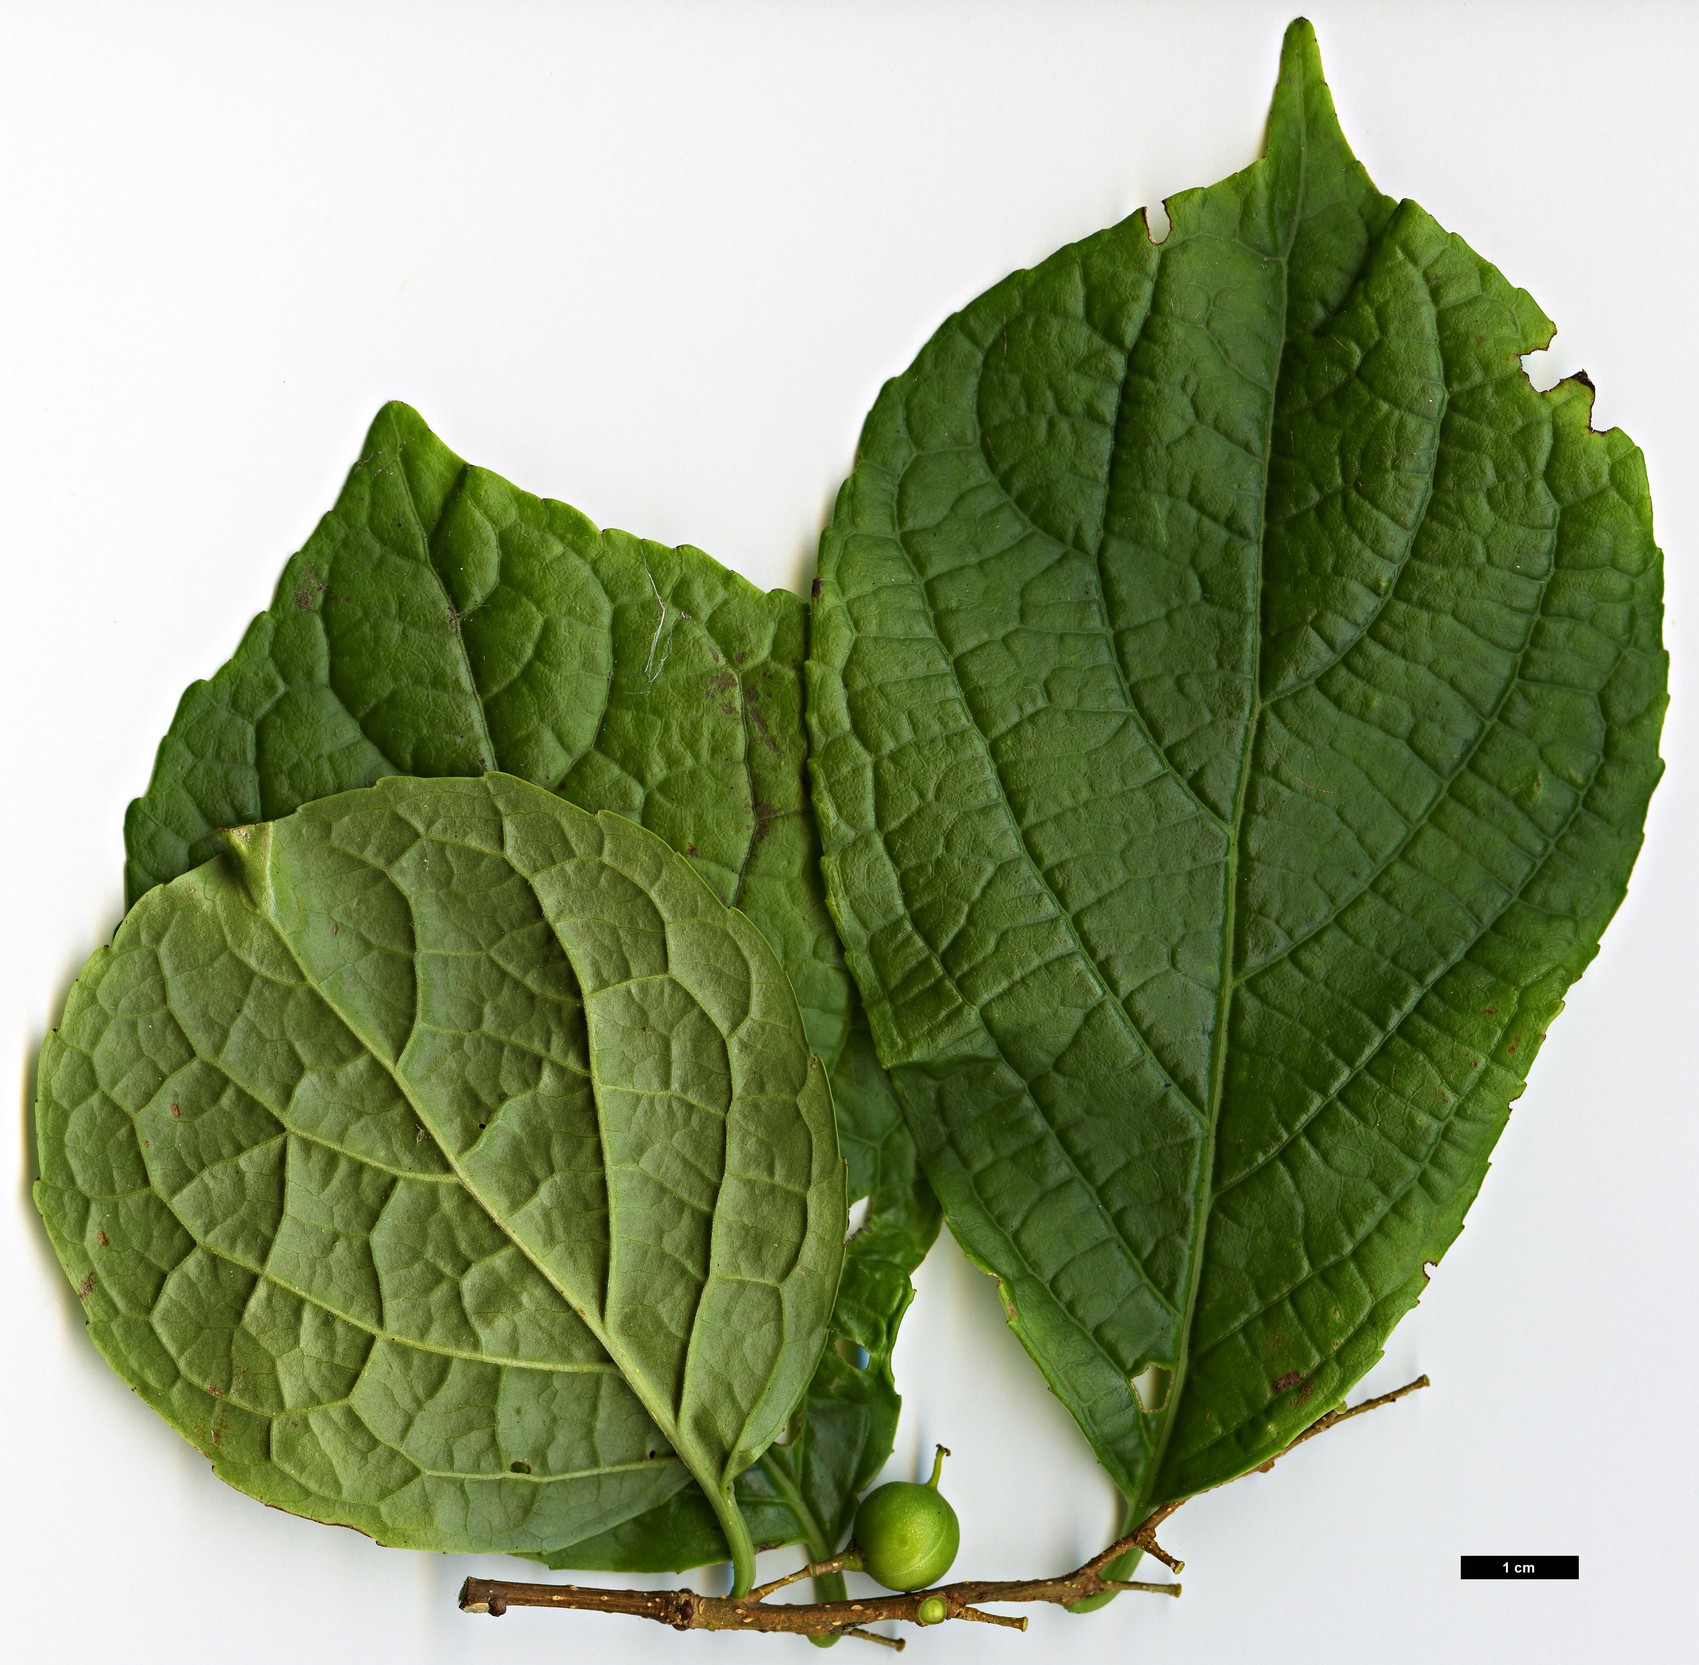 High resolution image: Family: Celastraceae - Genus: Celastrus - Taxon: glaucophyllus - SpeciesSub: var. rugosus